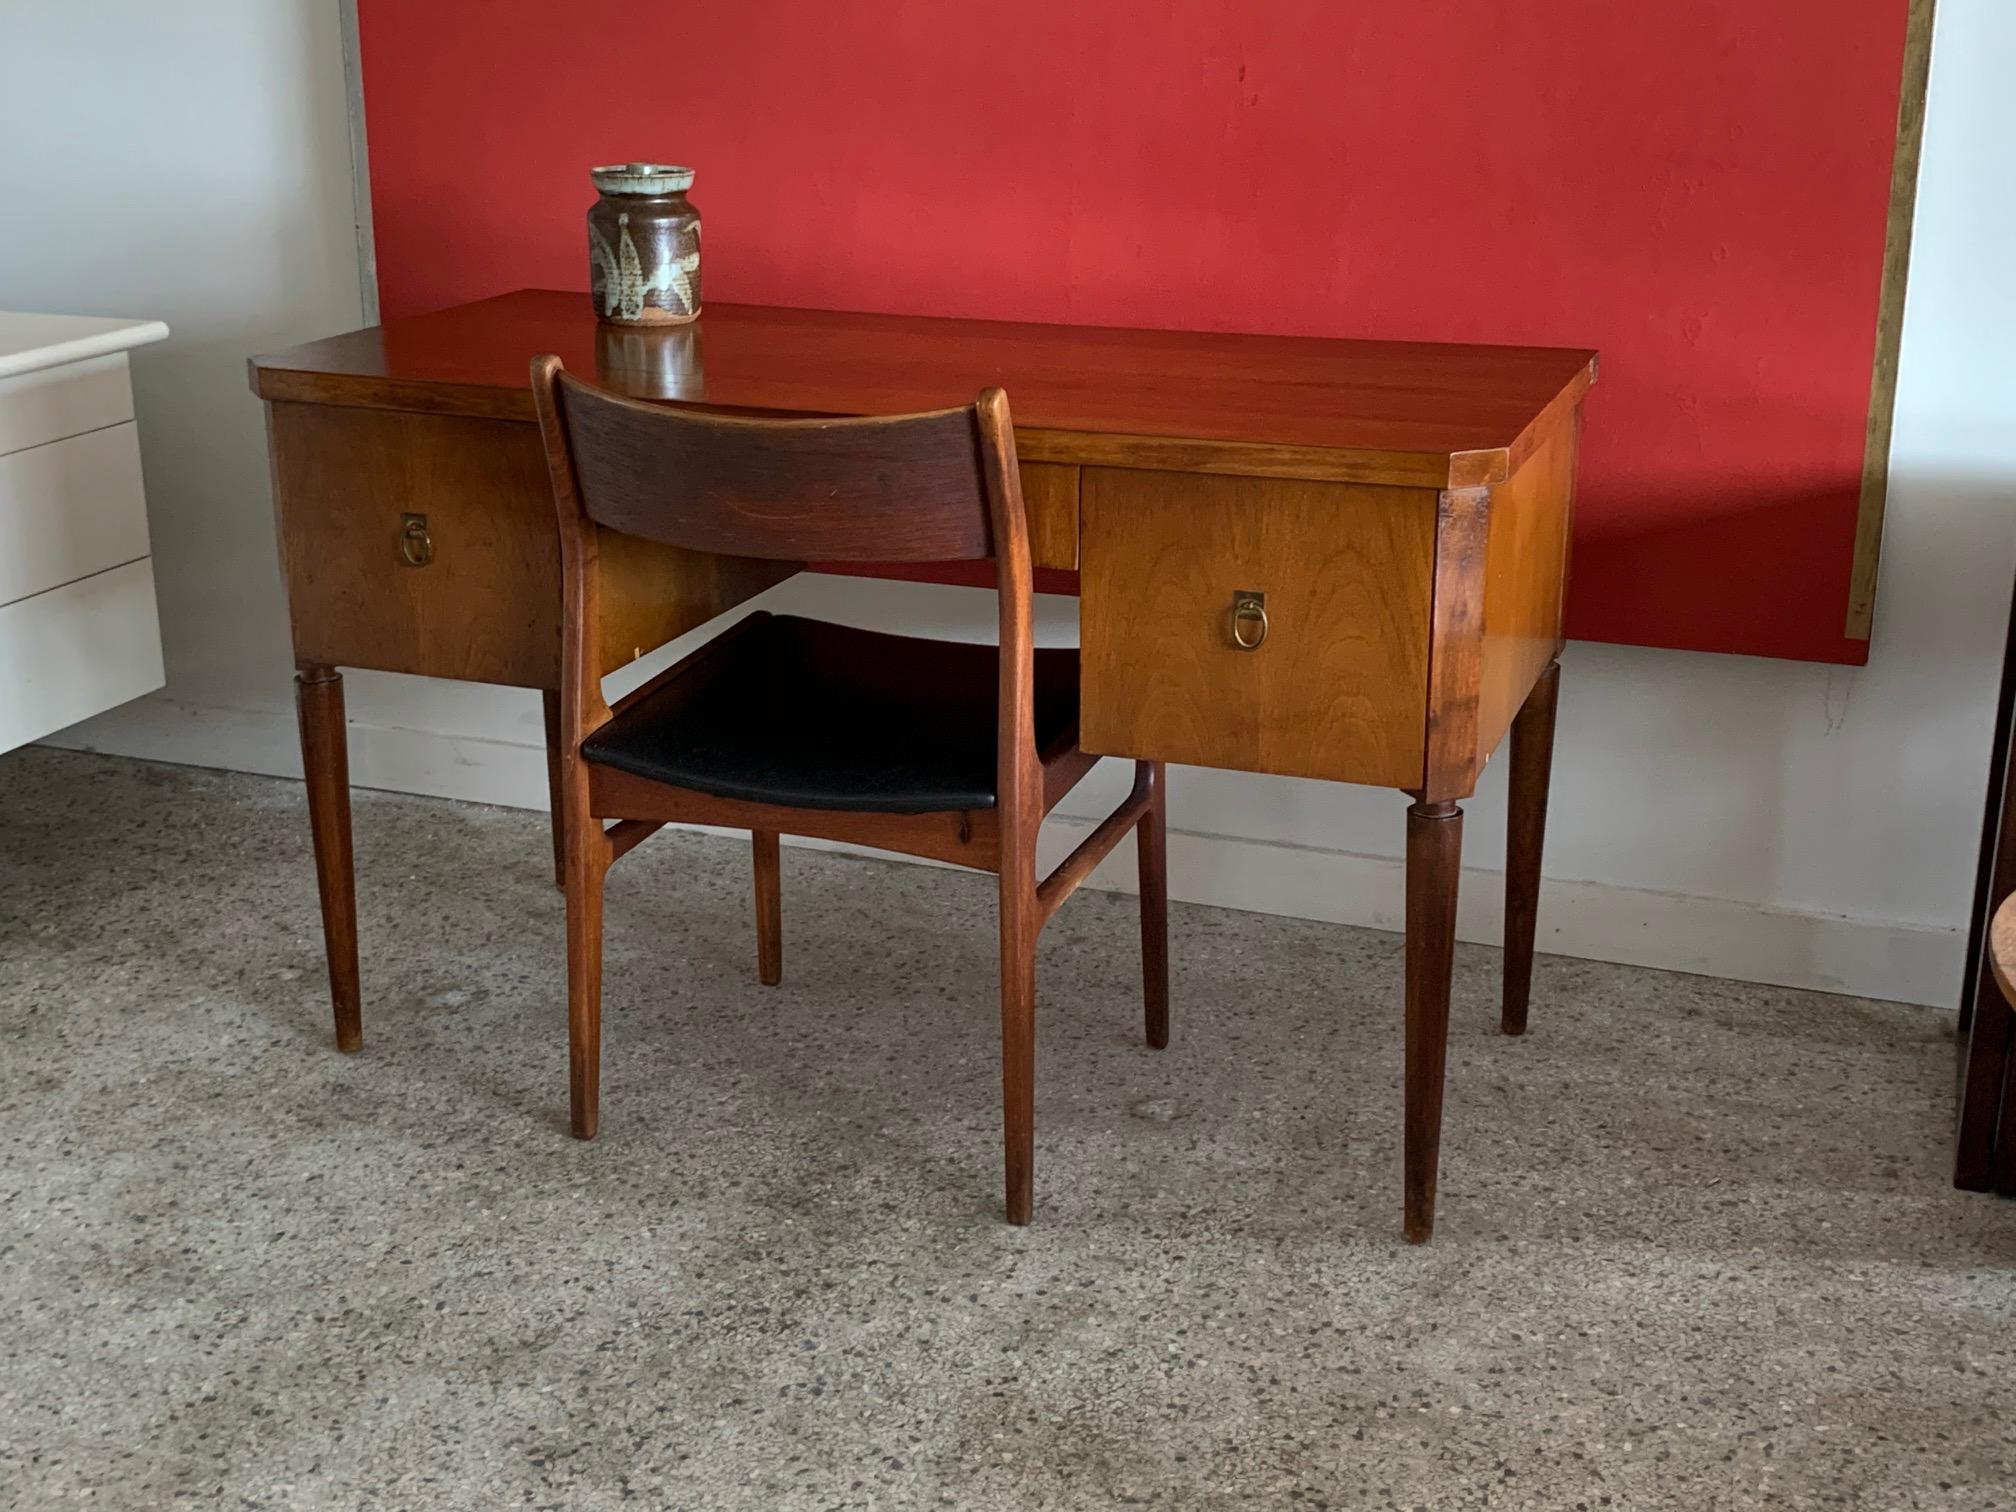 Mid-20th Century Elegant Desk by T.H. Robsjohn-Gibbings for Widdicomb, circa 1950s